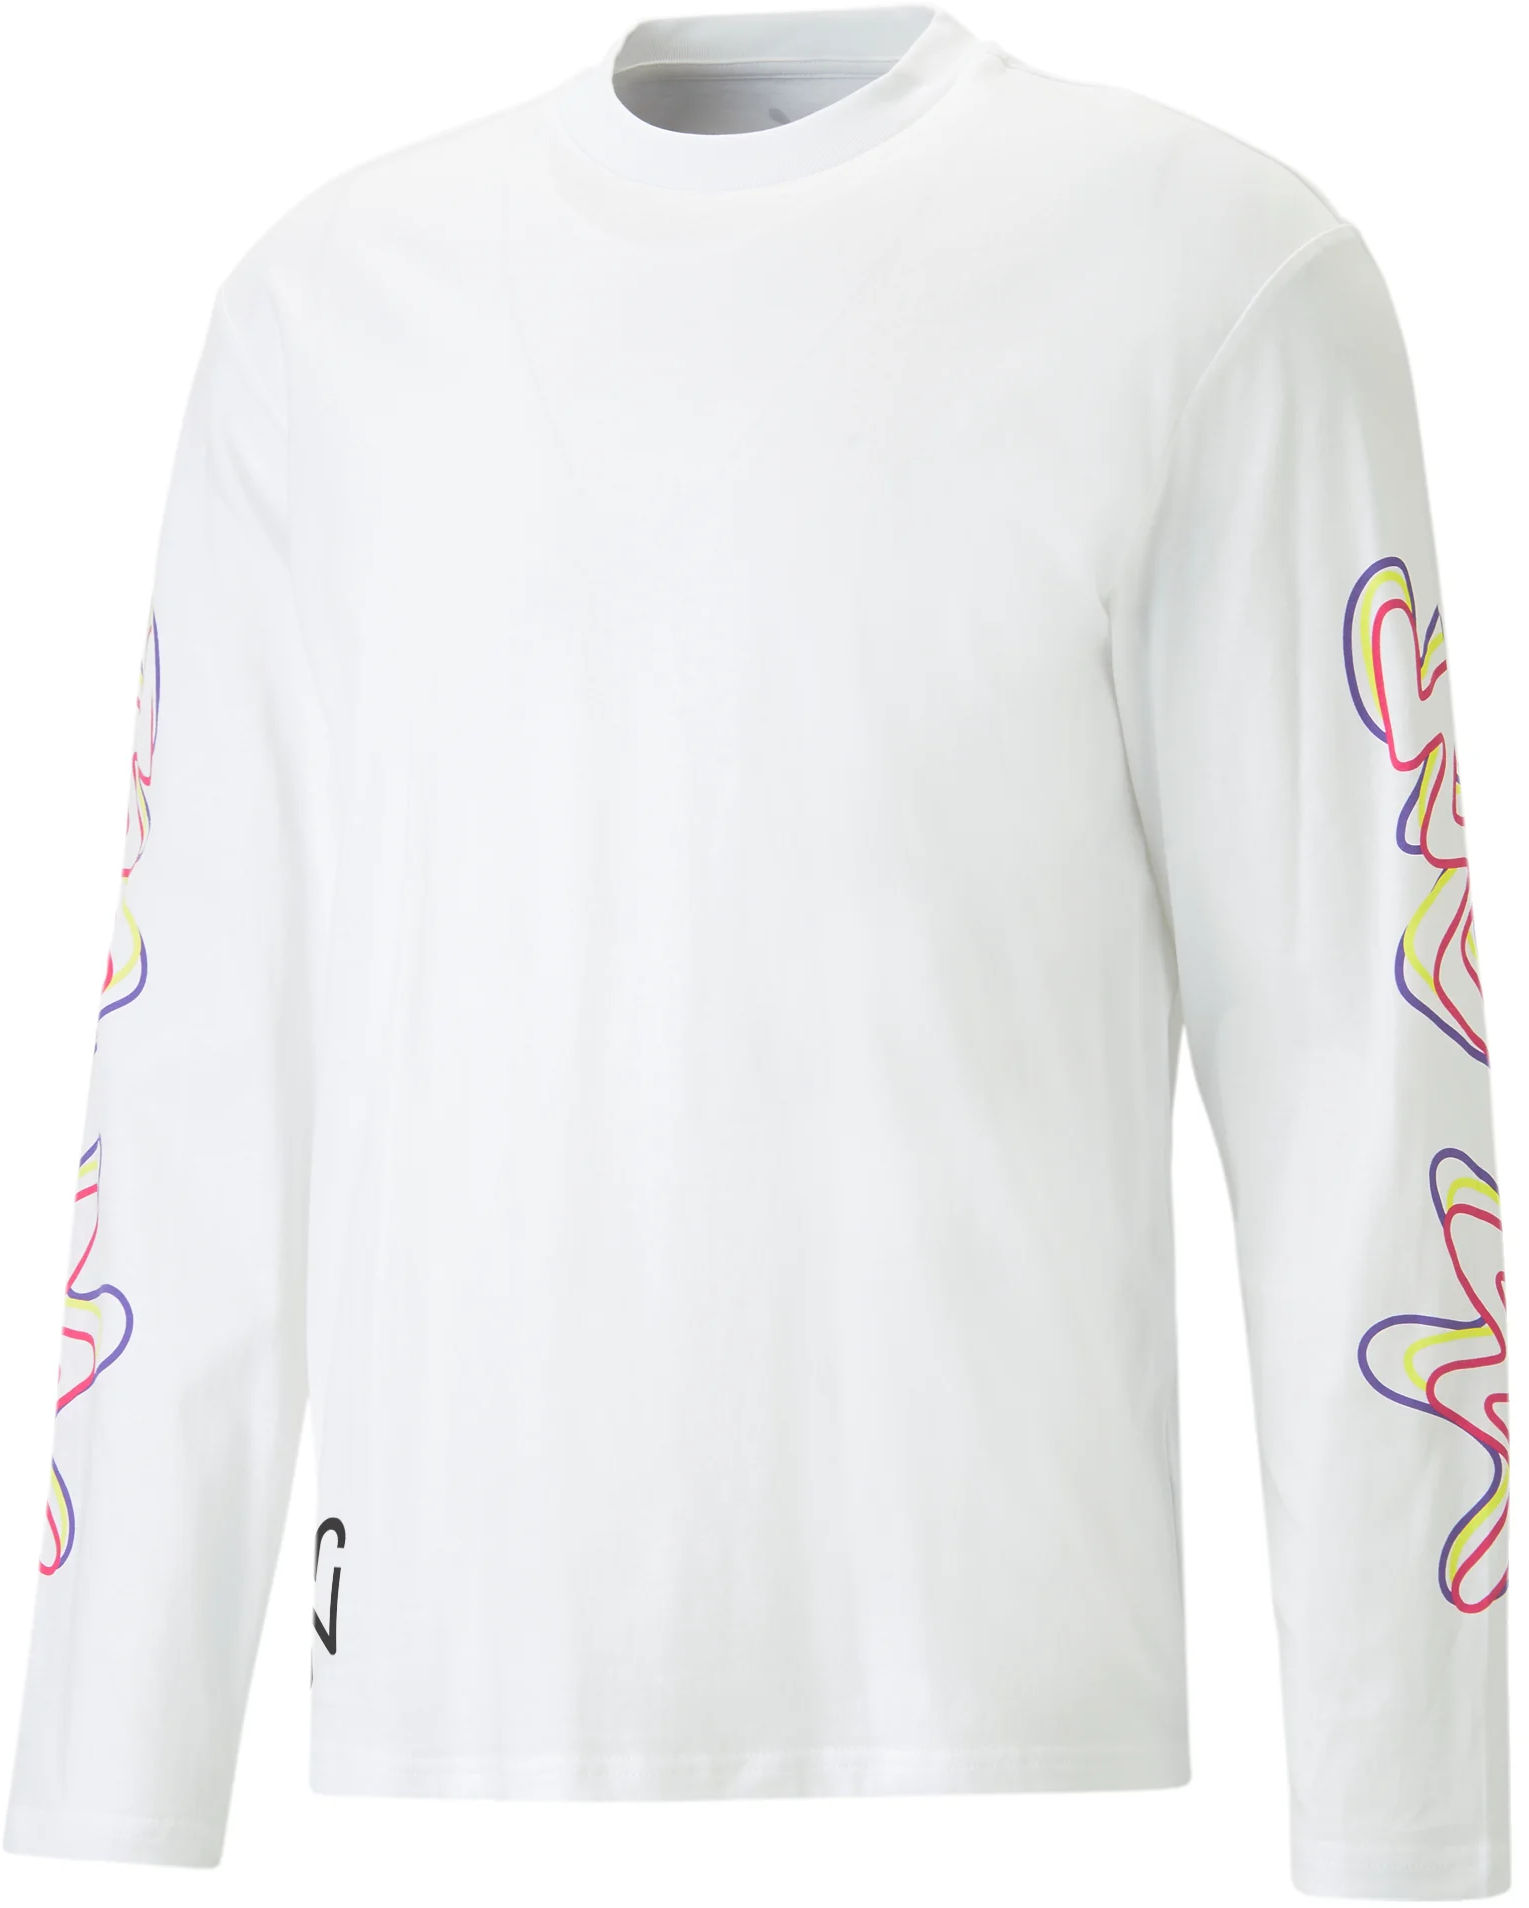 Magliette a maniche lunghe Puma Neymar JR Creativity Longsleeve Shirt